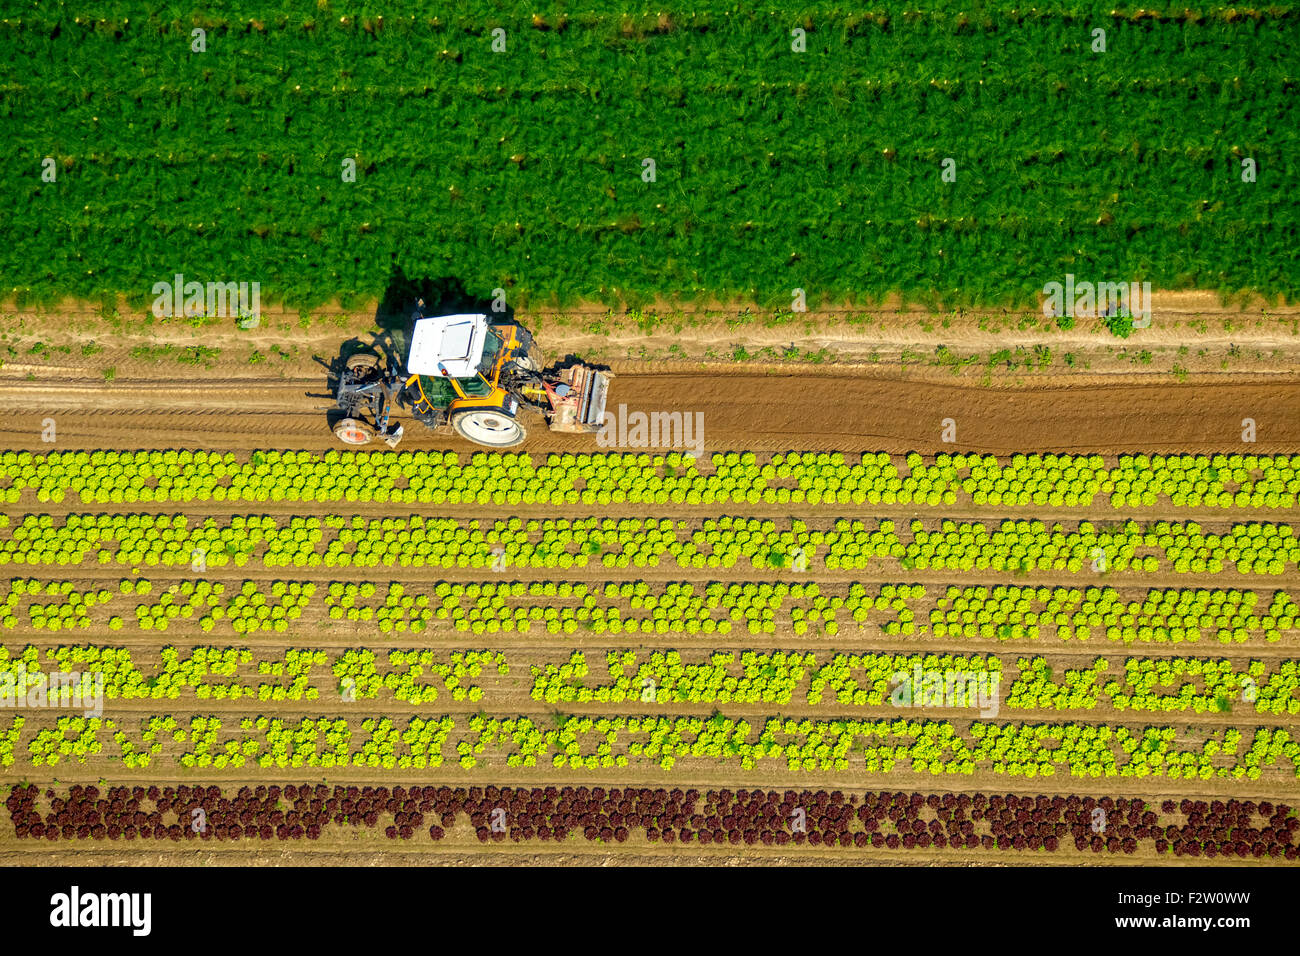 La récolte des légumes dans les champs, les travailleurs de la récolte avec le tracteur, Minden, Rhénanie du Nord-Westphalie, Allemagne Banque D'Images